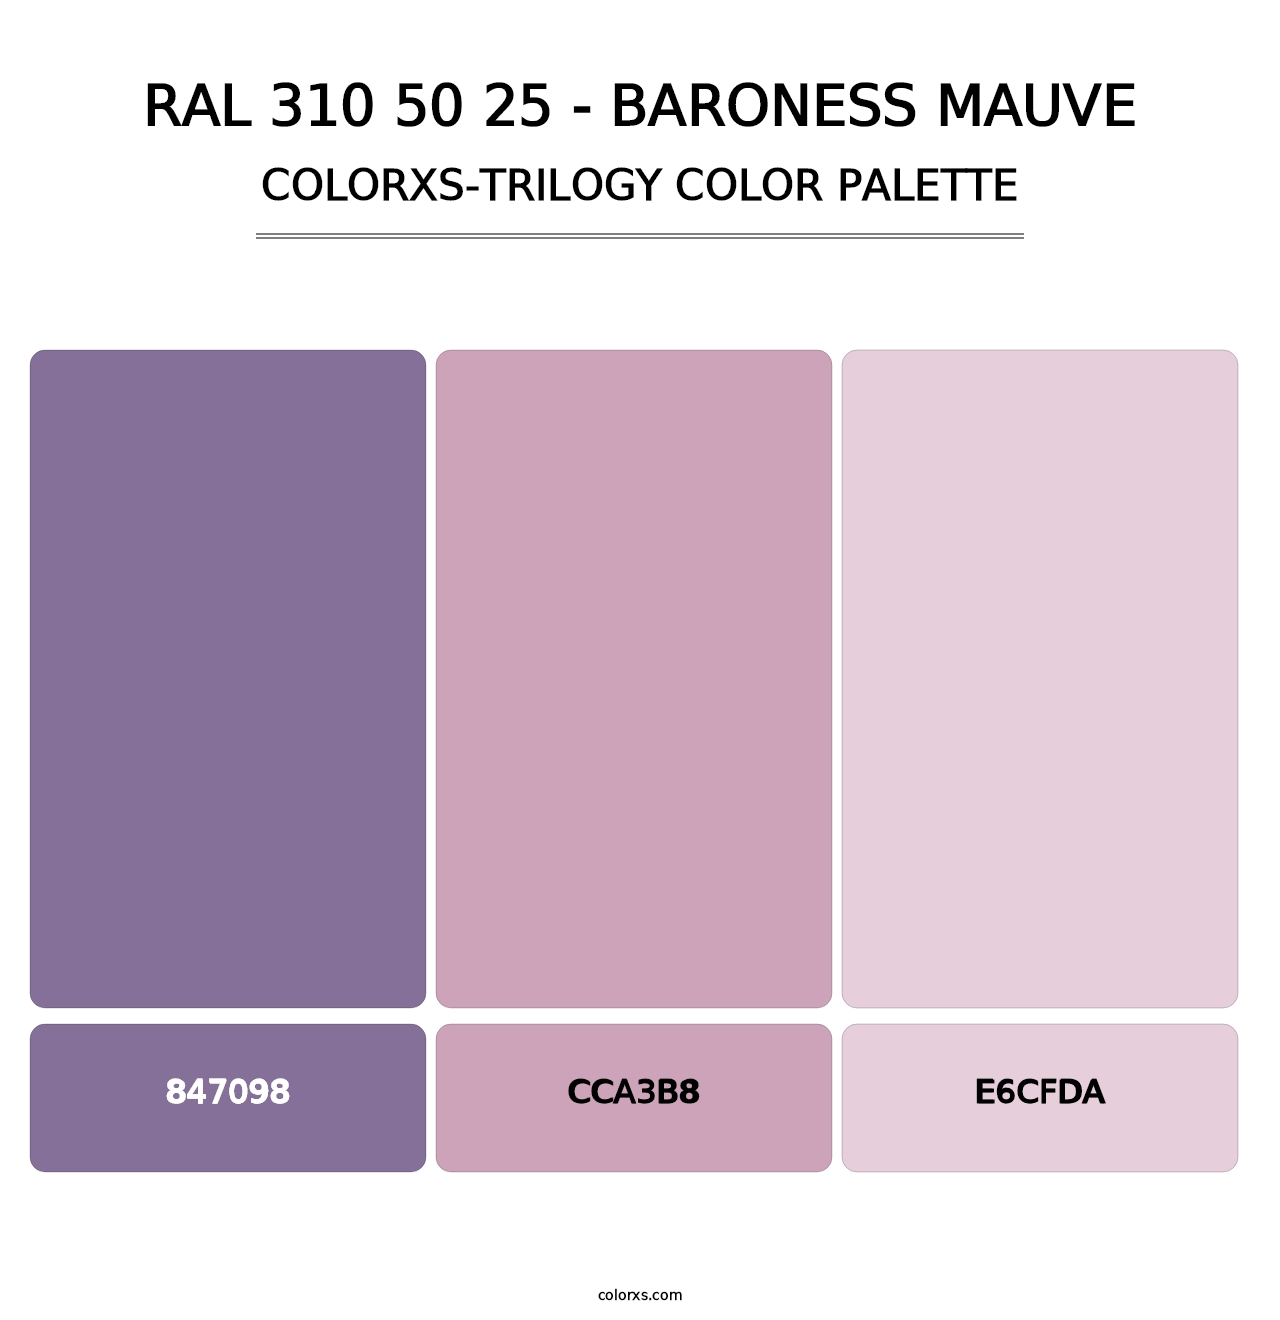 RAL 310 50 25 - Baroness Mauve - Colorxs Trilogy Palette